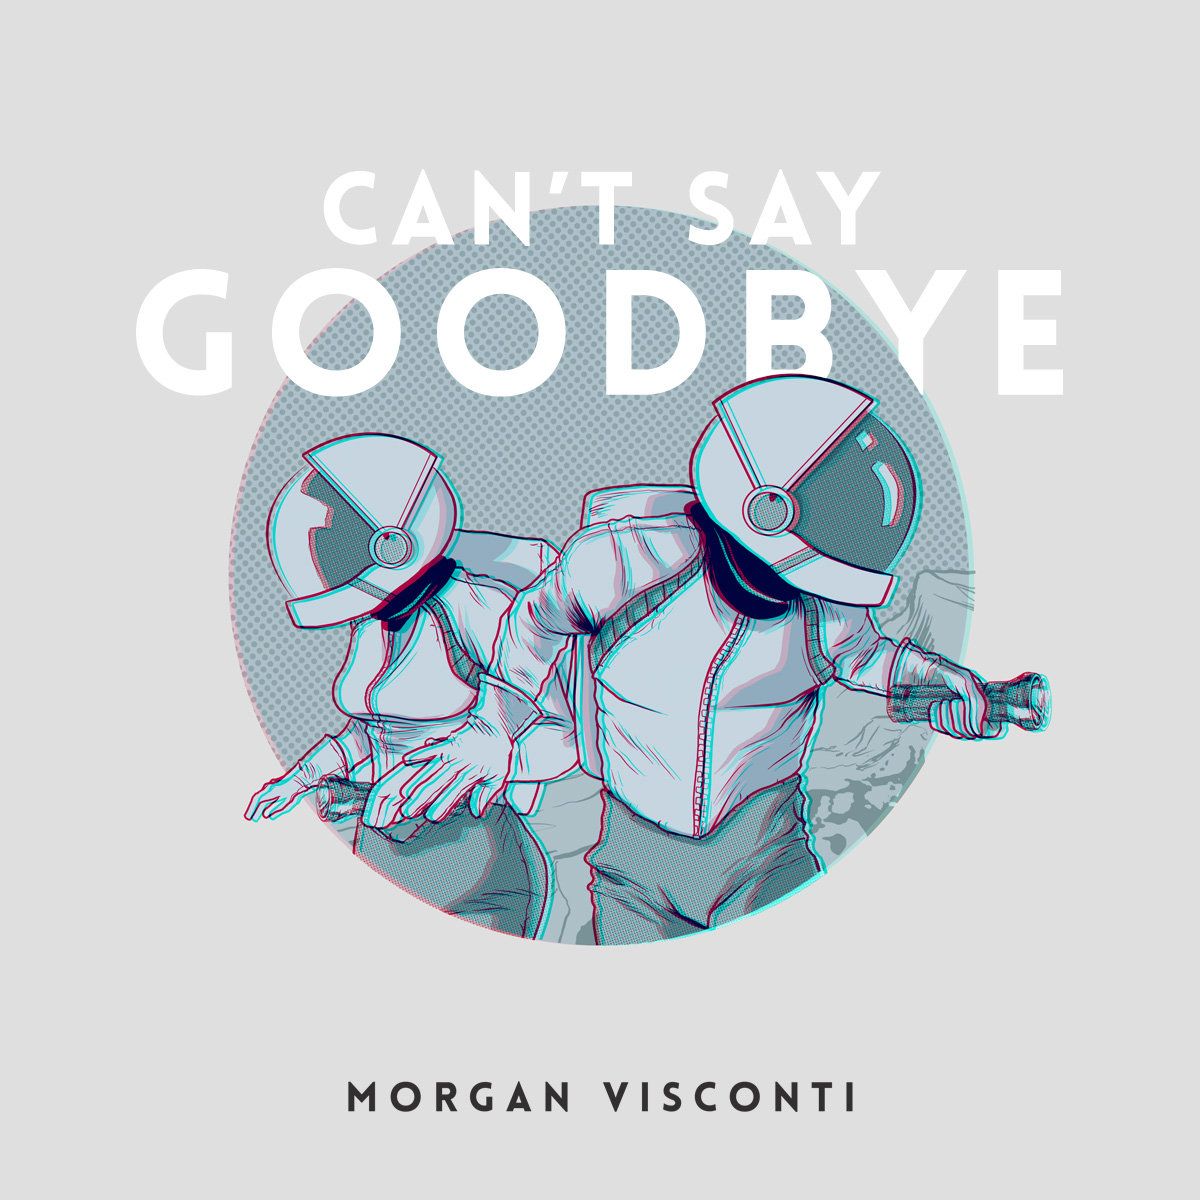 Morgan Visconti- remix of 